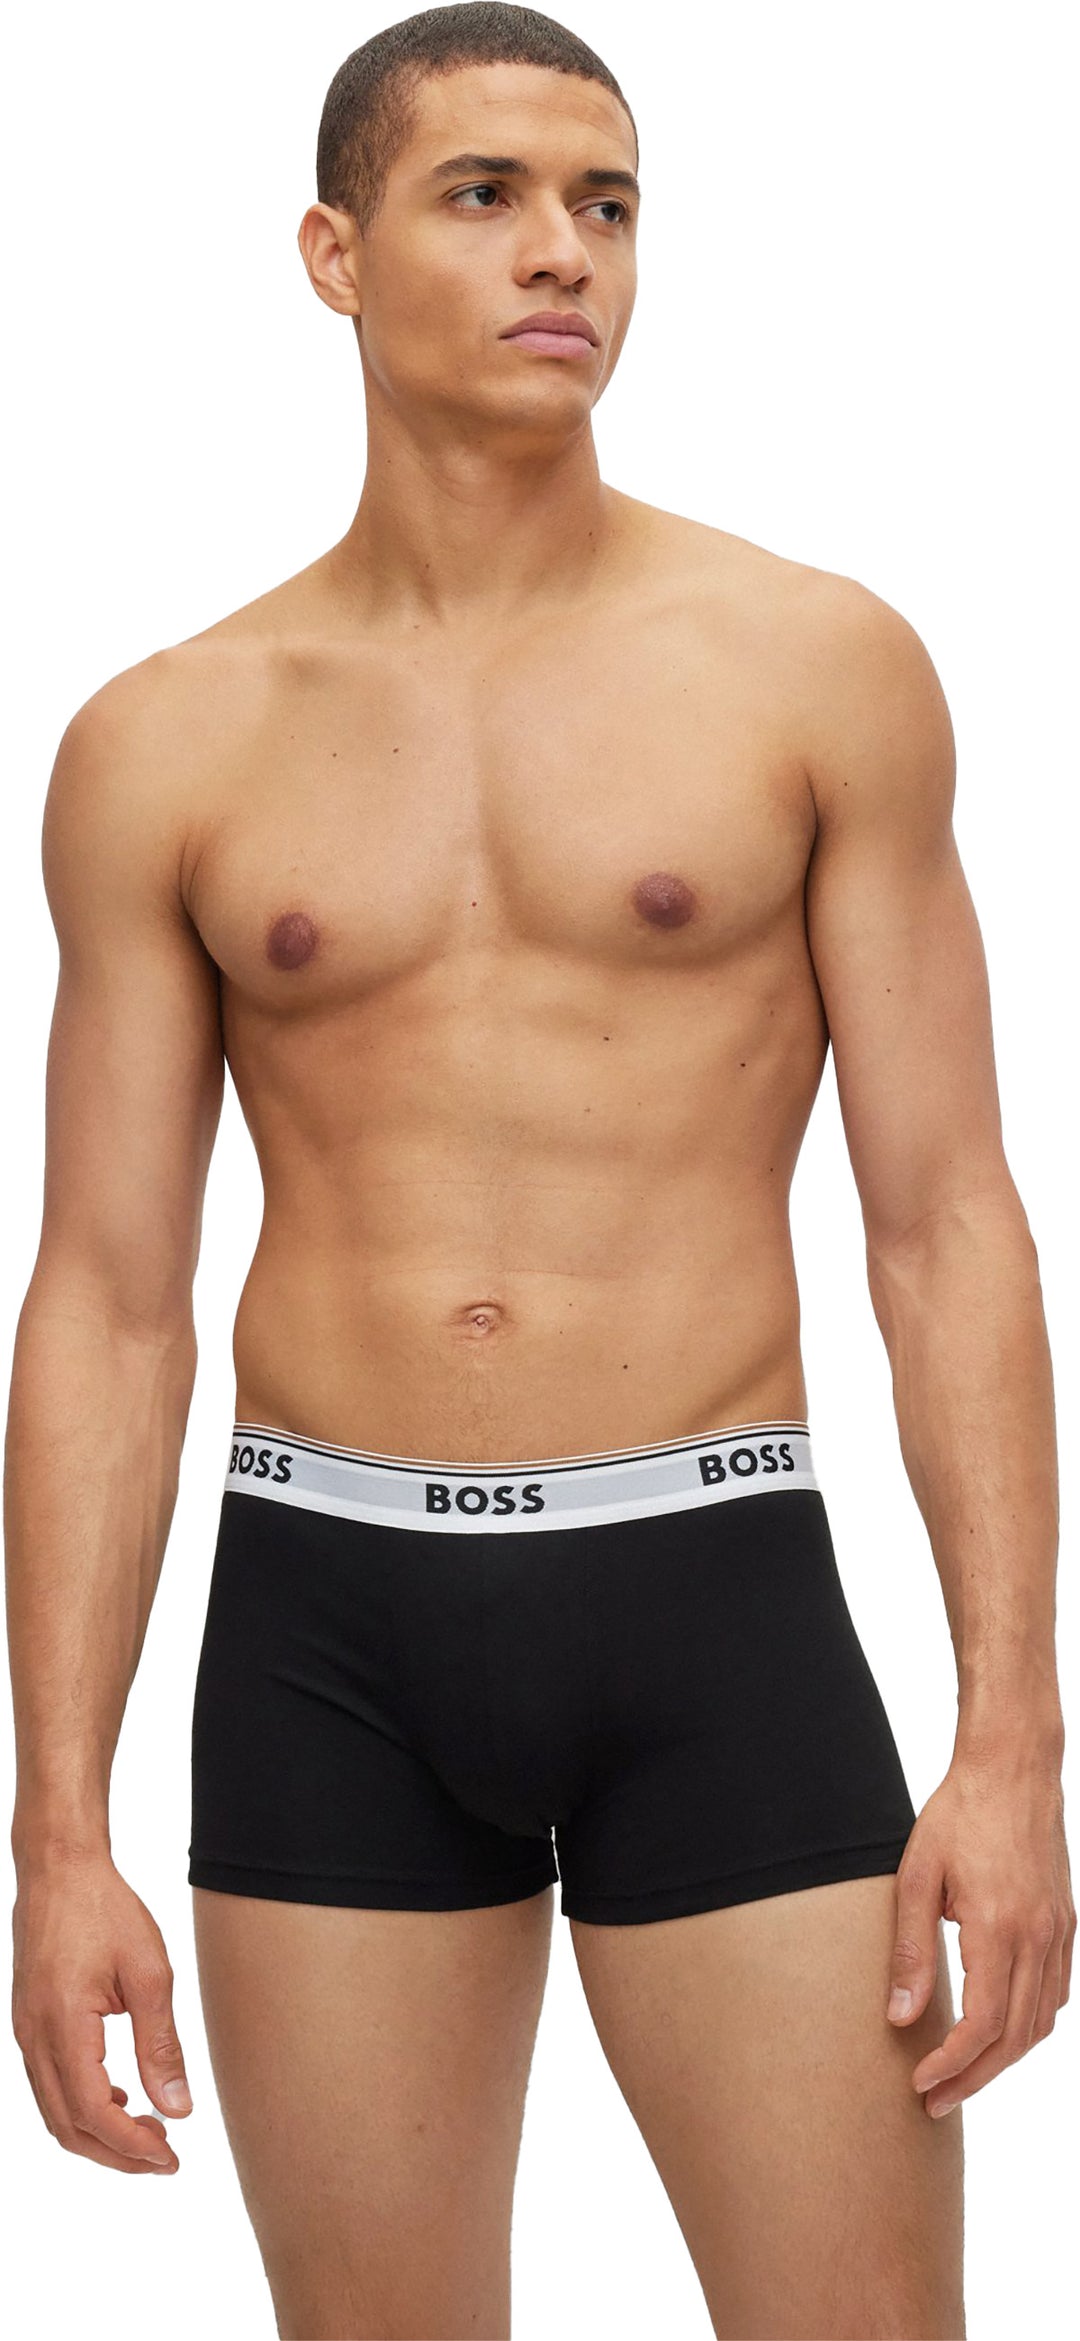 Boss Power Pack de trois boxers pour hommes en noir